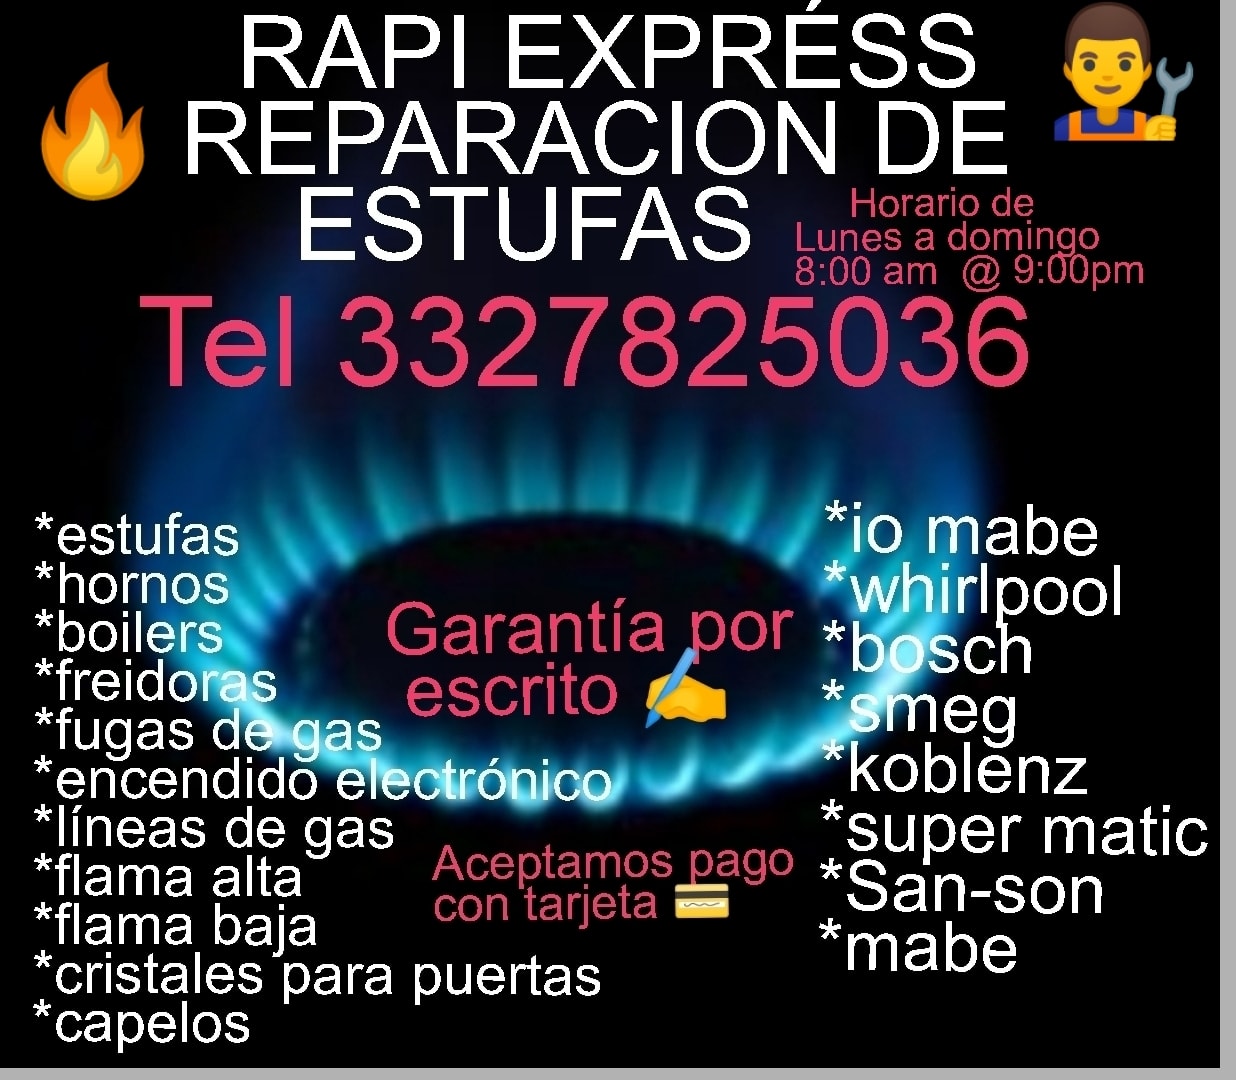 Rapi Express